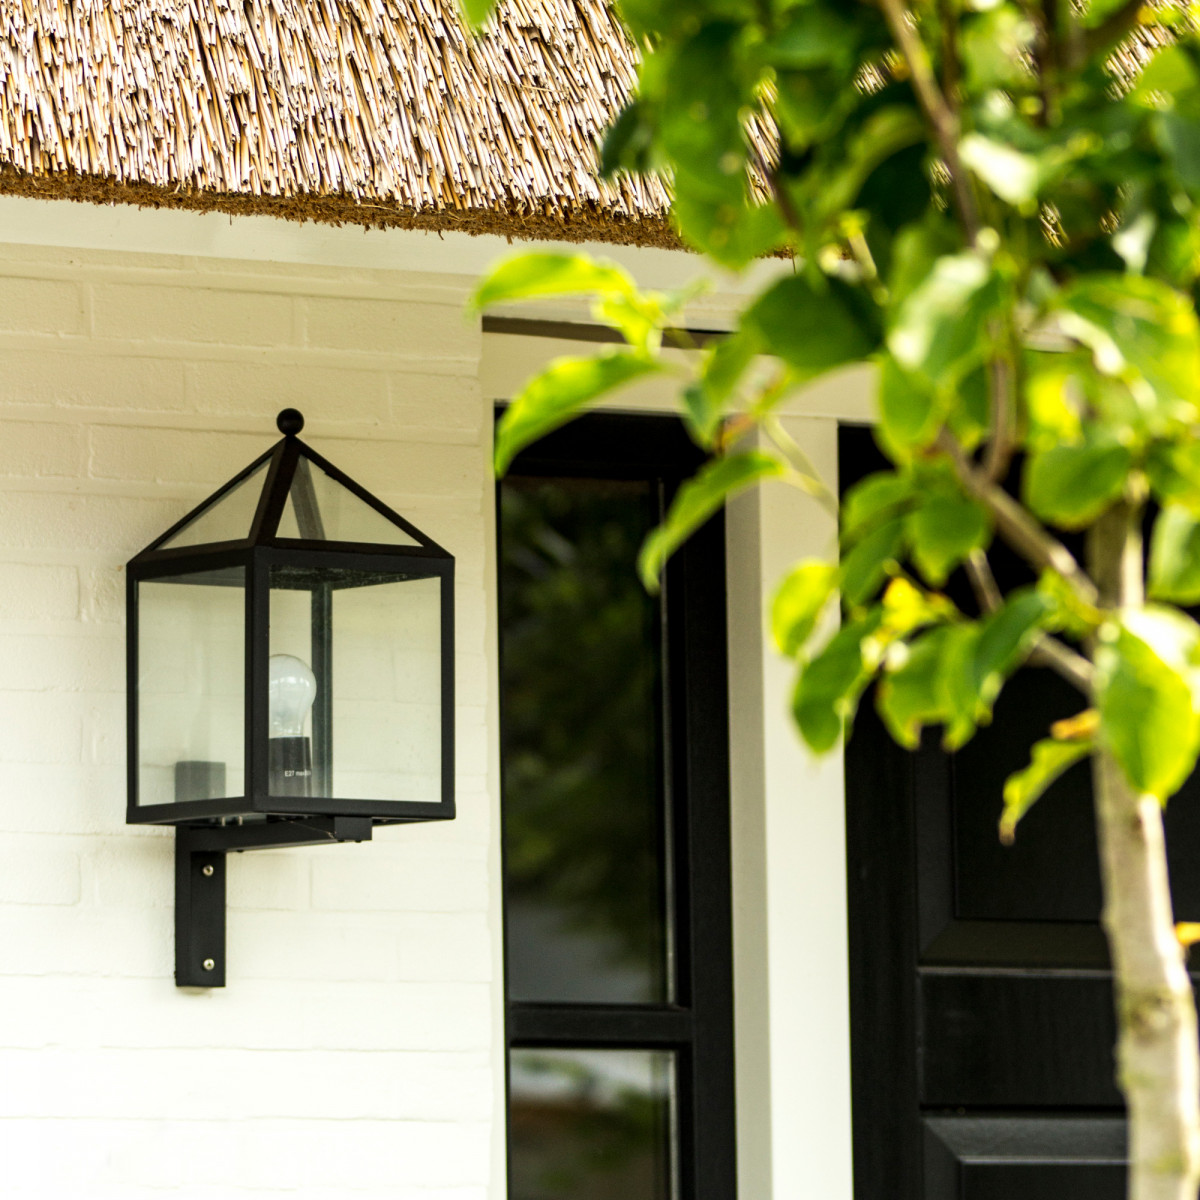 Buitenlamp huisjes model, zwart RVS frame, heldere beglazing, stijlvolle gevelverlichting,  KS kwaliteitsverlichting